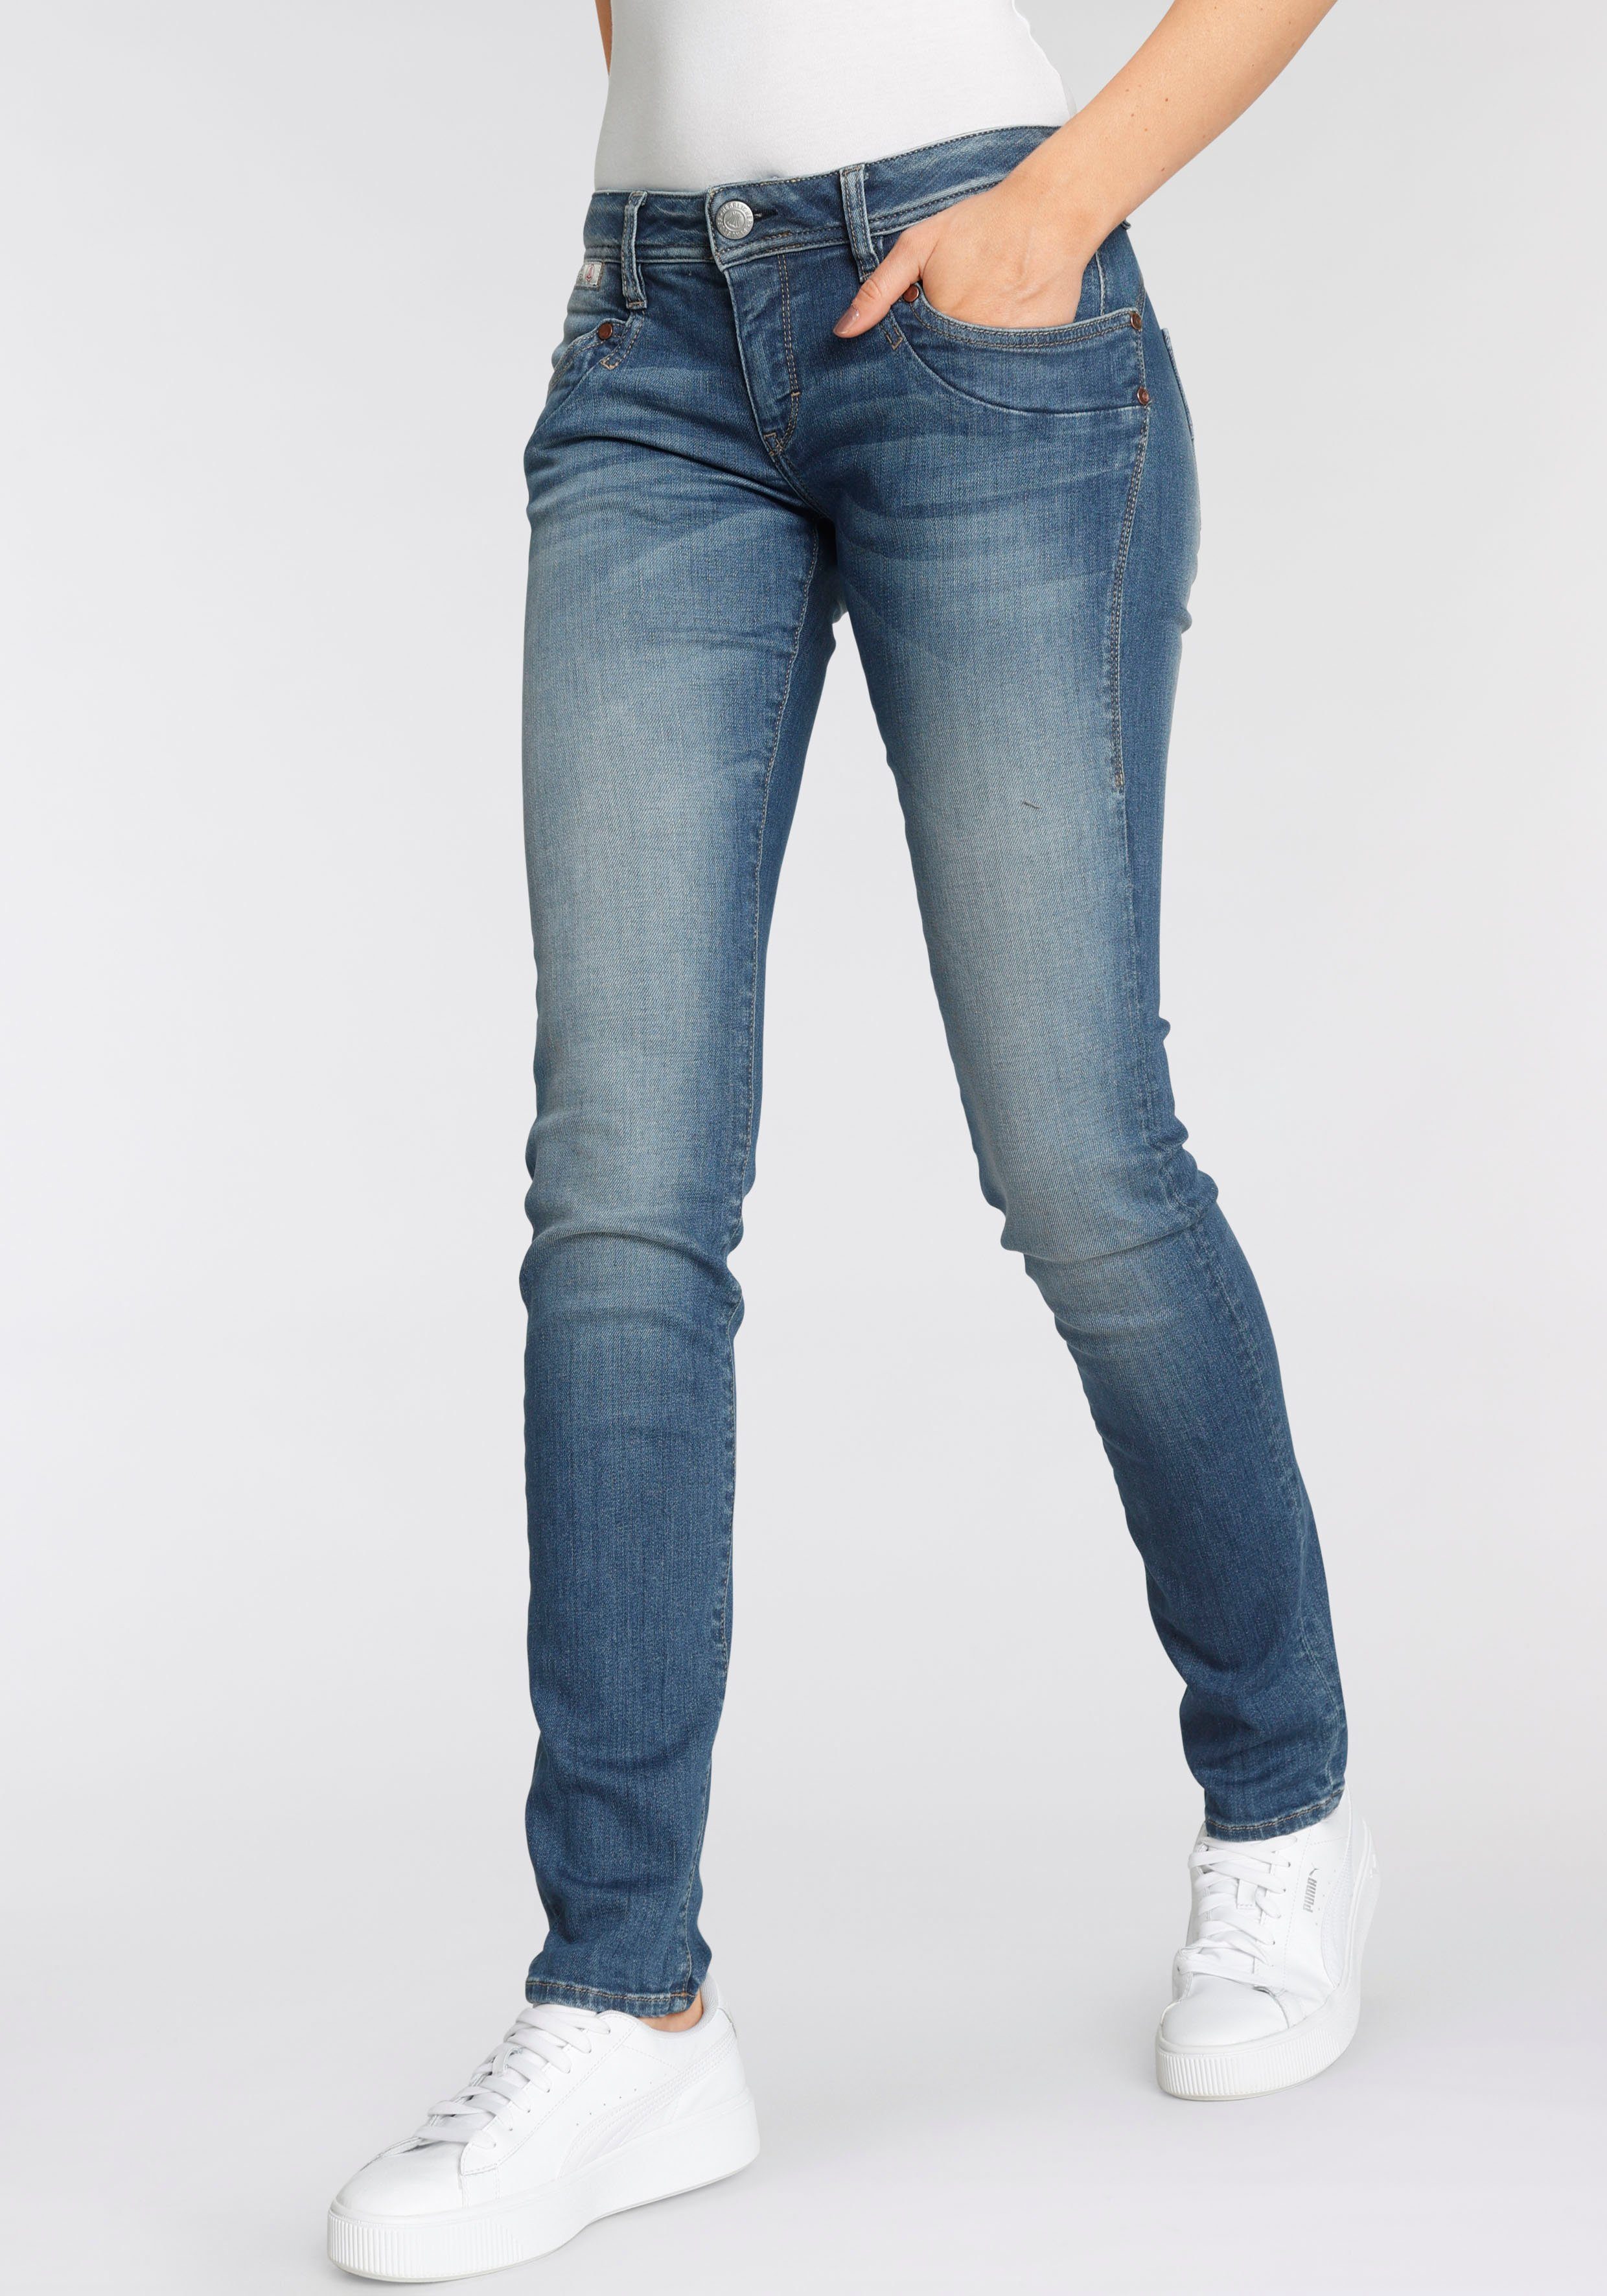 Herrlicher Slim-fit-Jeans PIPER SLIM ORGANIC umweltfreundlich dank Kitotex  Technology, Bei der Herstellung wird weniger Wasser, Energie und  Chemikalien verwendet